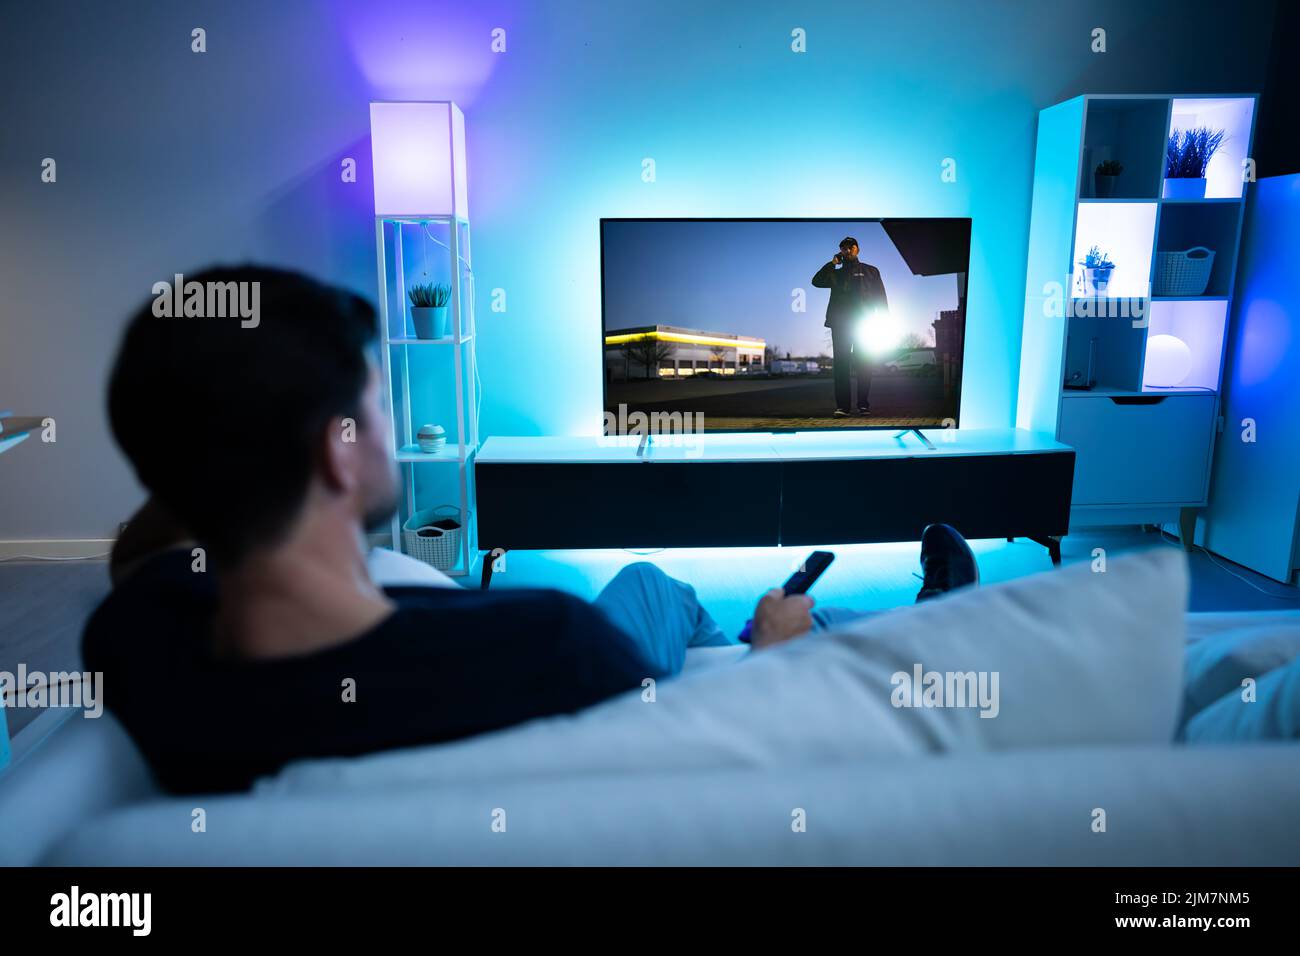 Reproducción y visualización de películas en la pantalla del televisor Foto de stock